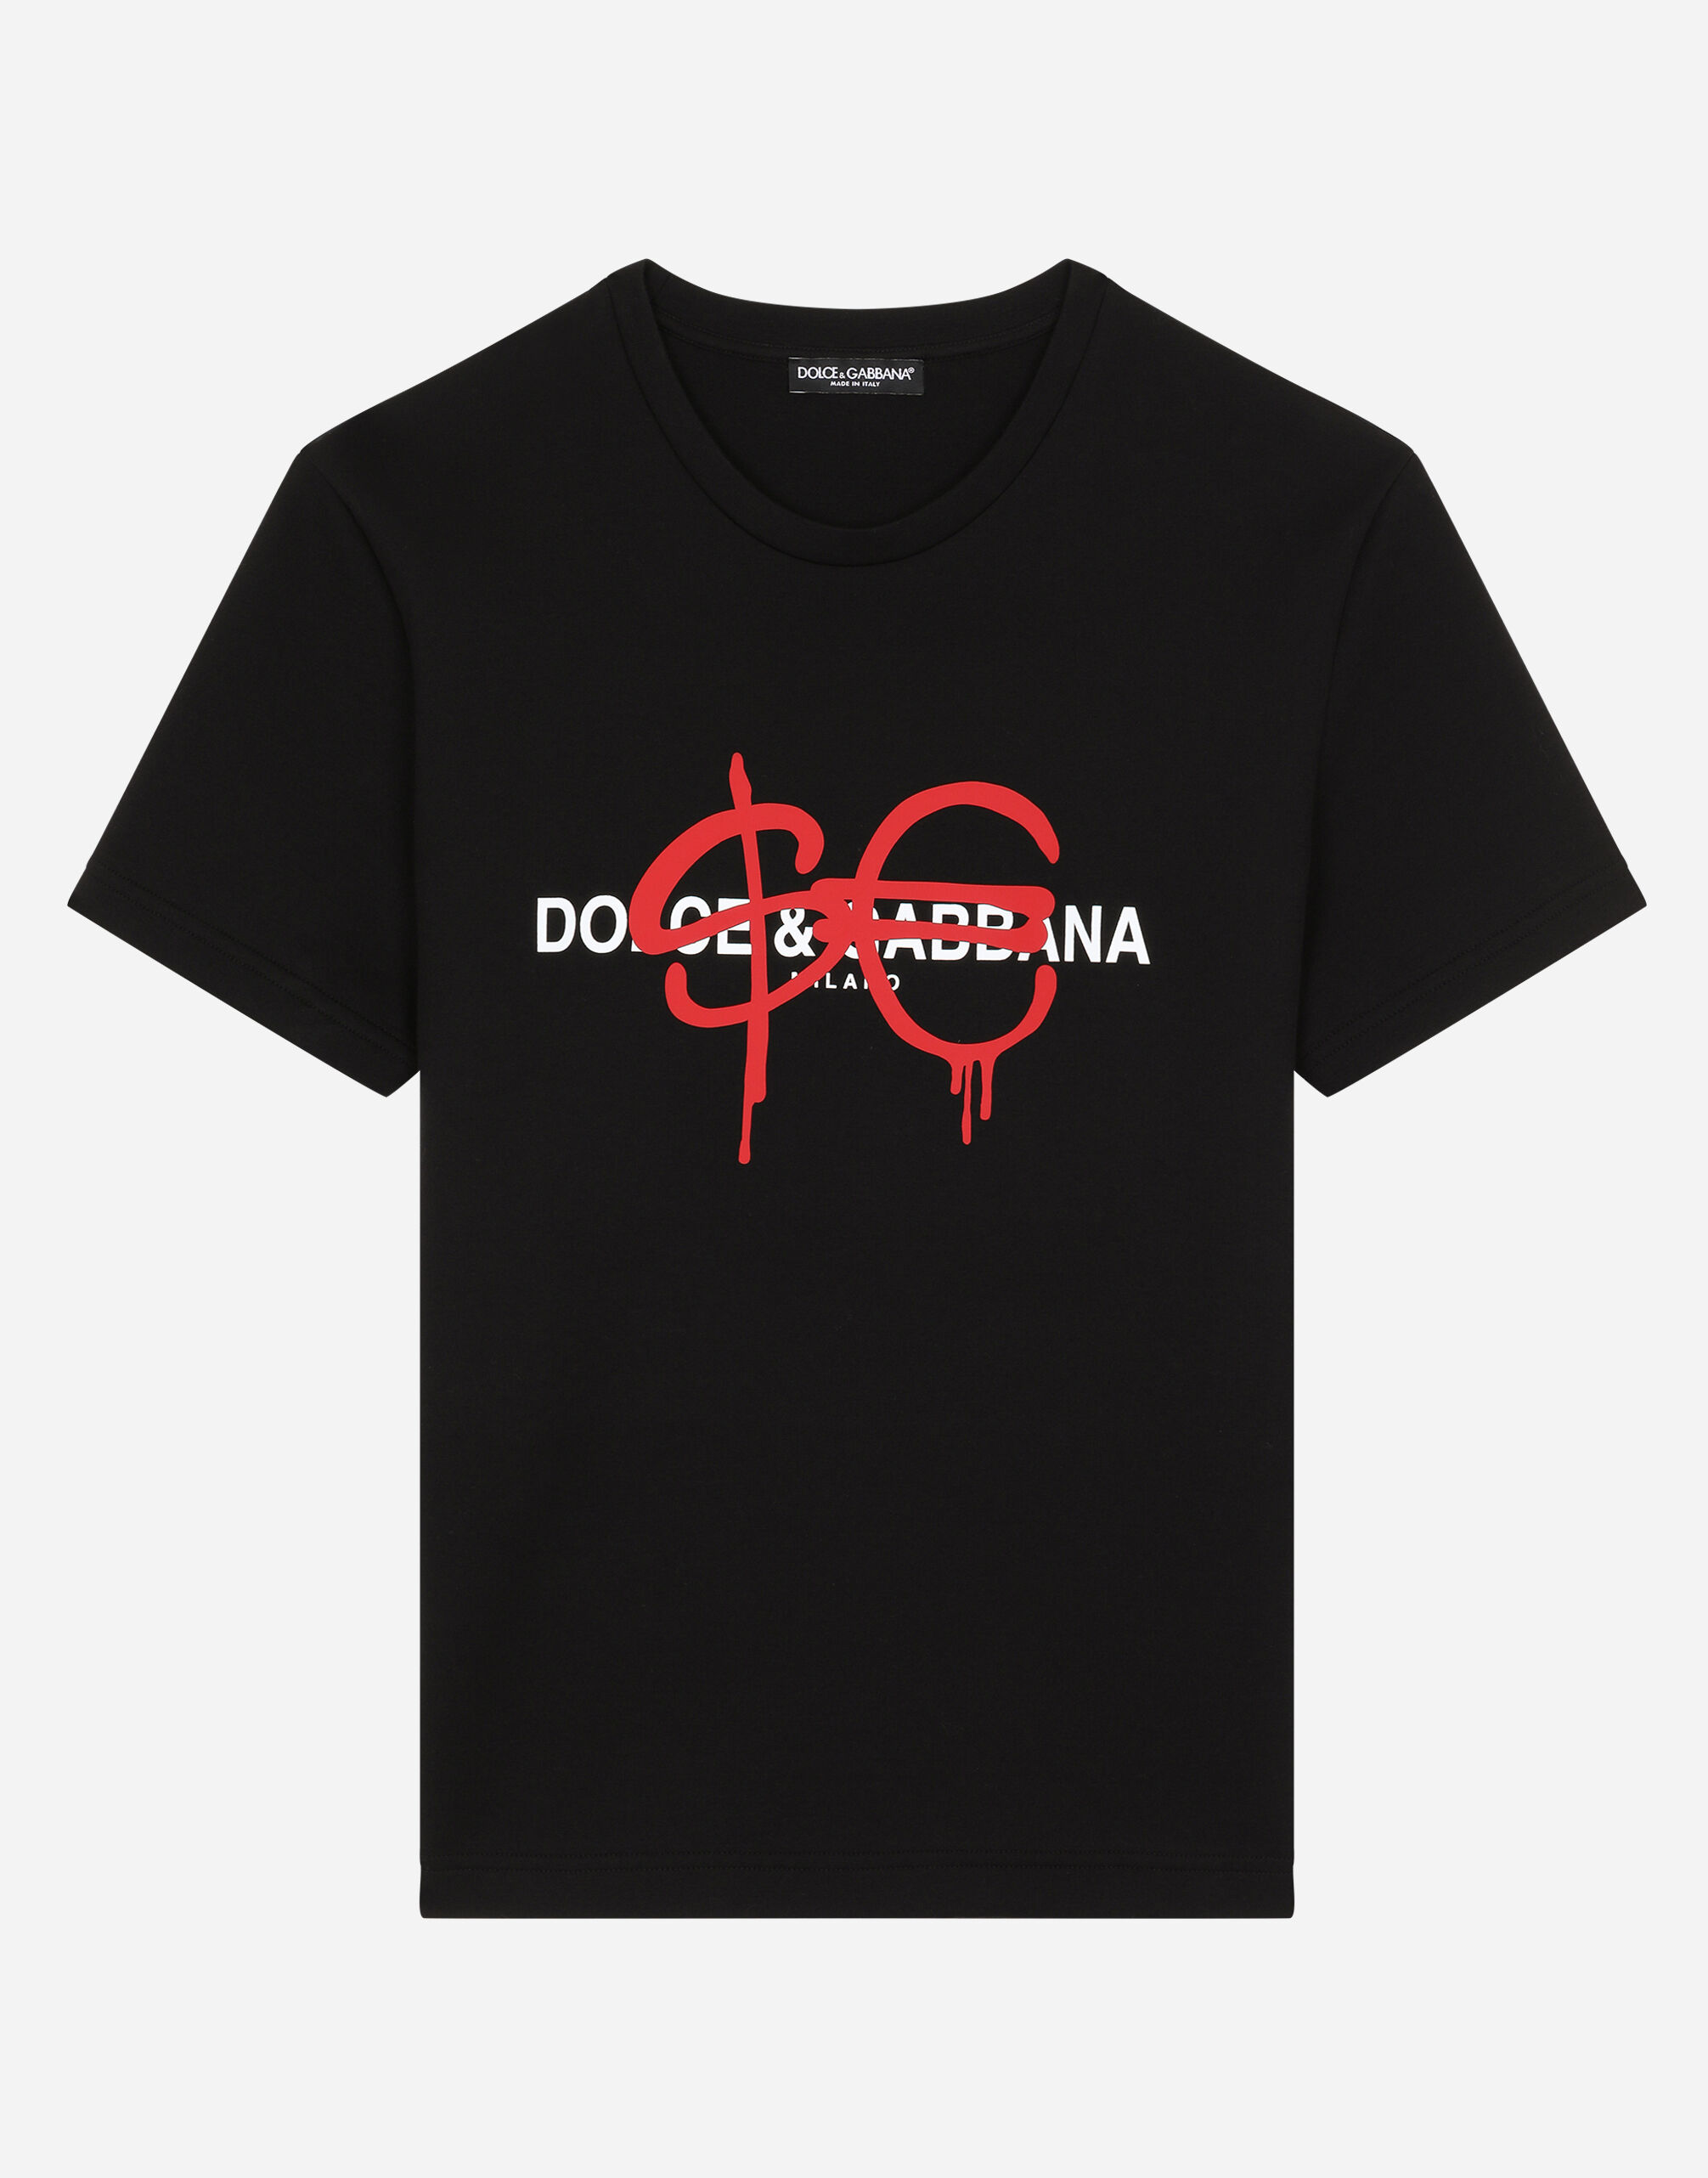 Sfera Ebbasta x Dolceu0026Gabbana t-shirt